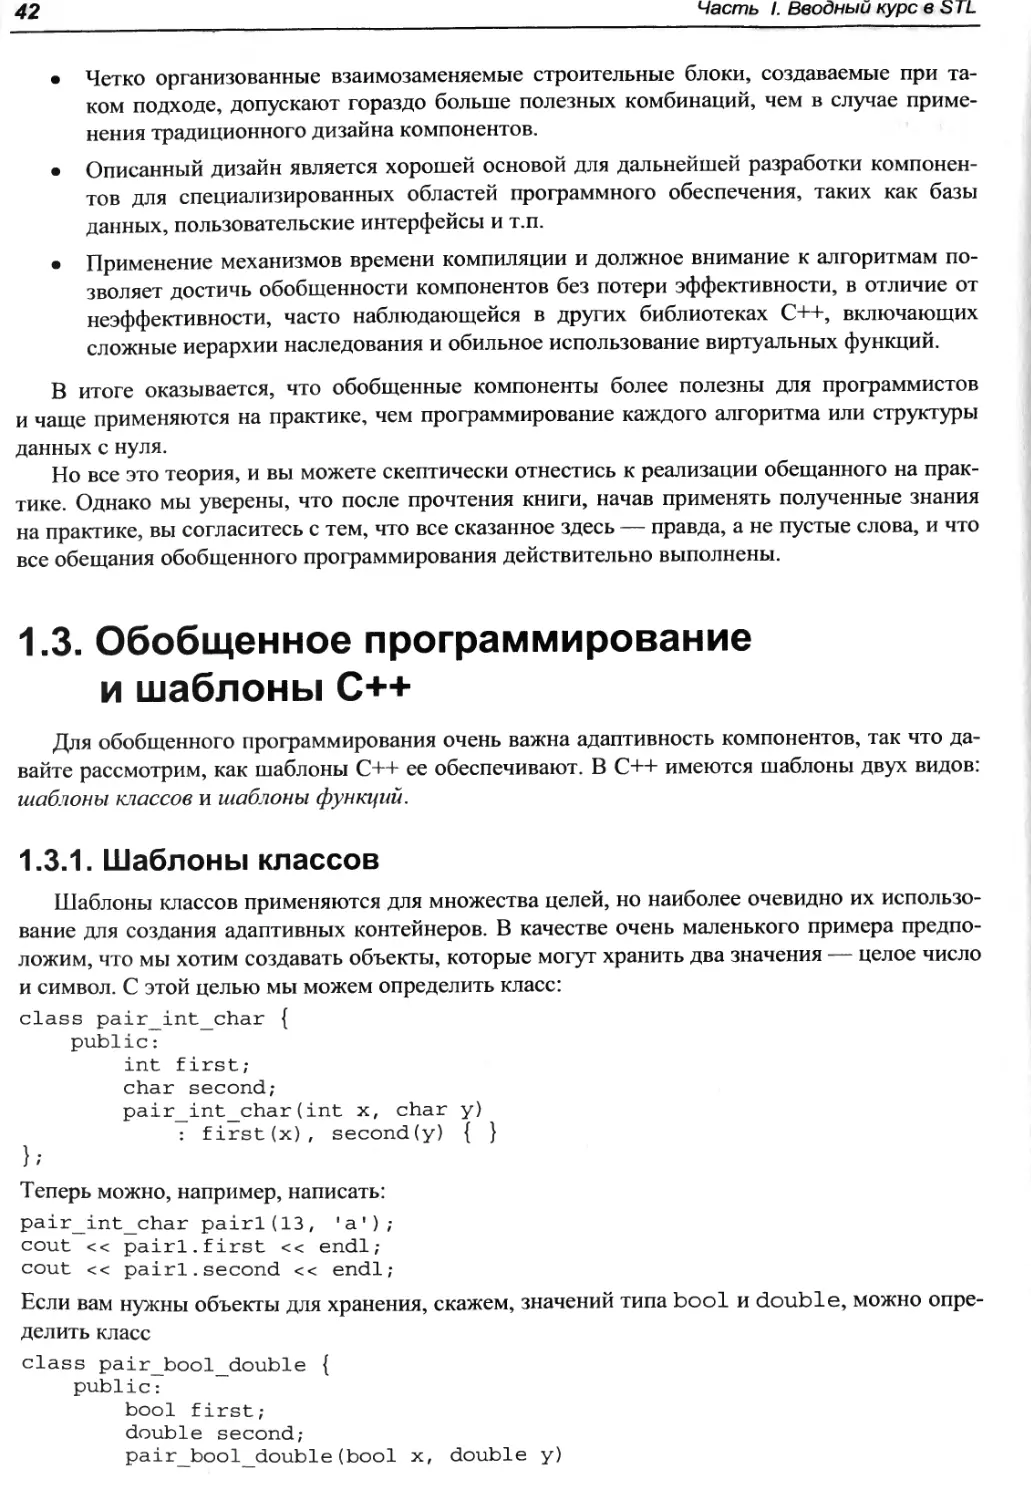 1.3. Обобщенное программирование и шаблоны C++
1.3.1. Шаблоны классов